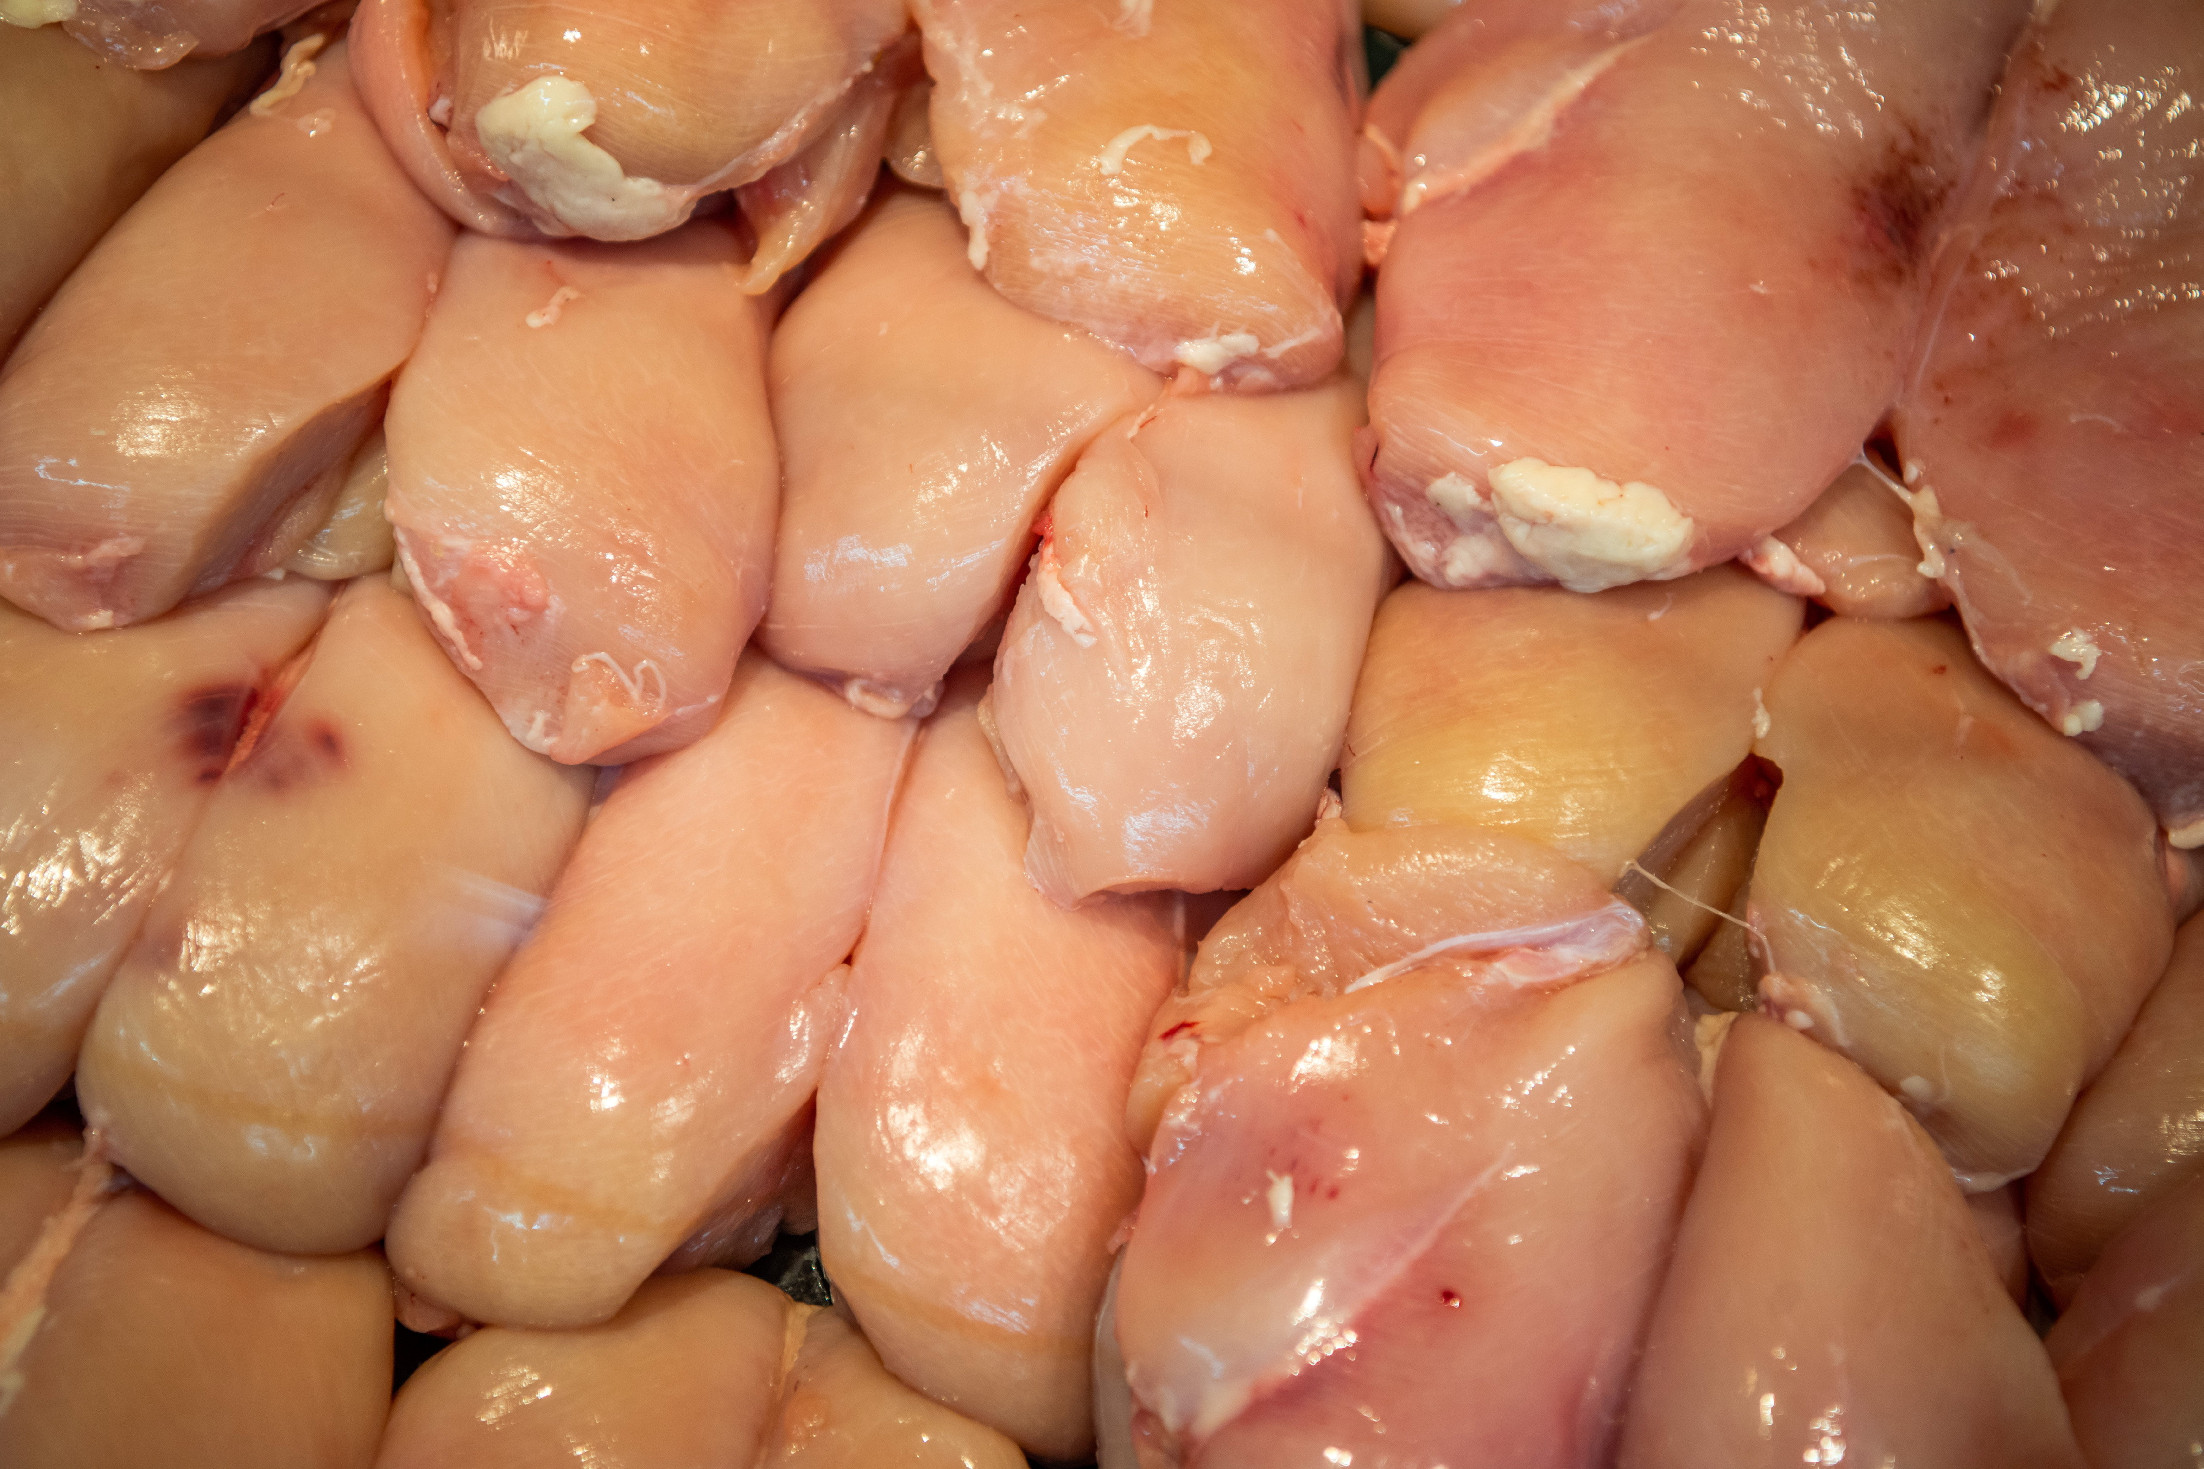 Több mint egy tonna ismeretlen eredetű csirke far-hátot találtak egy teherautóban